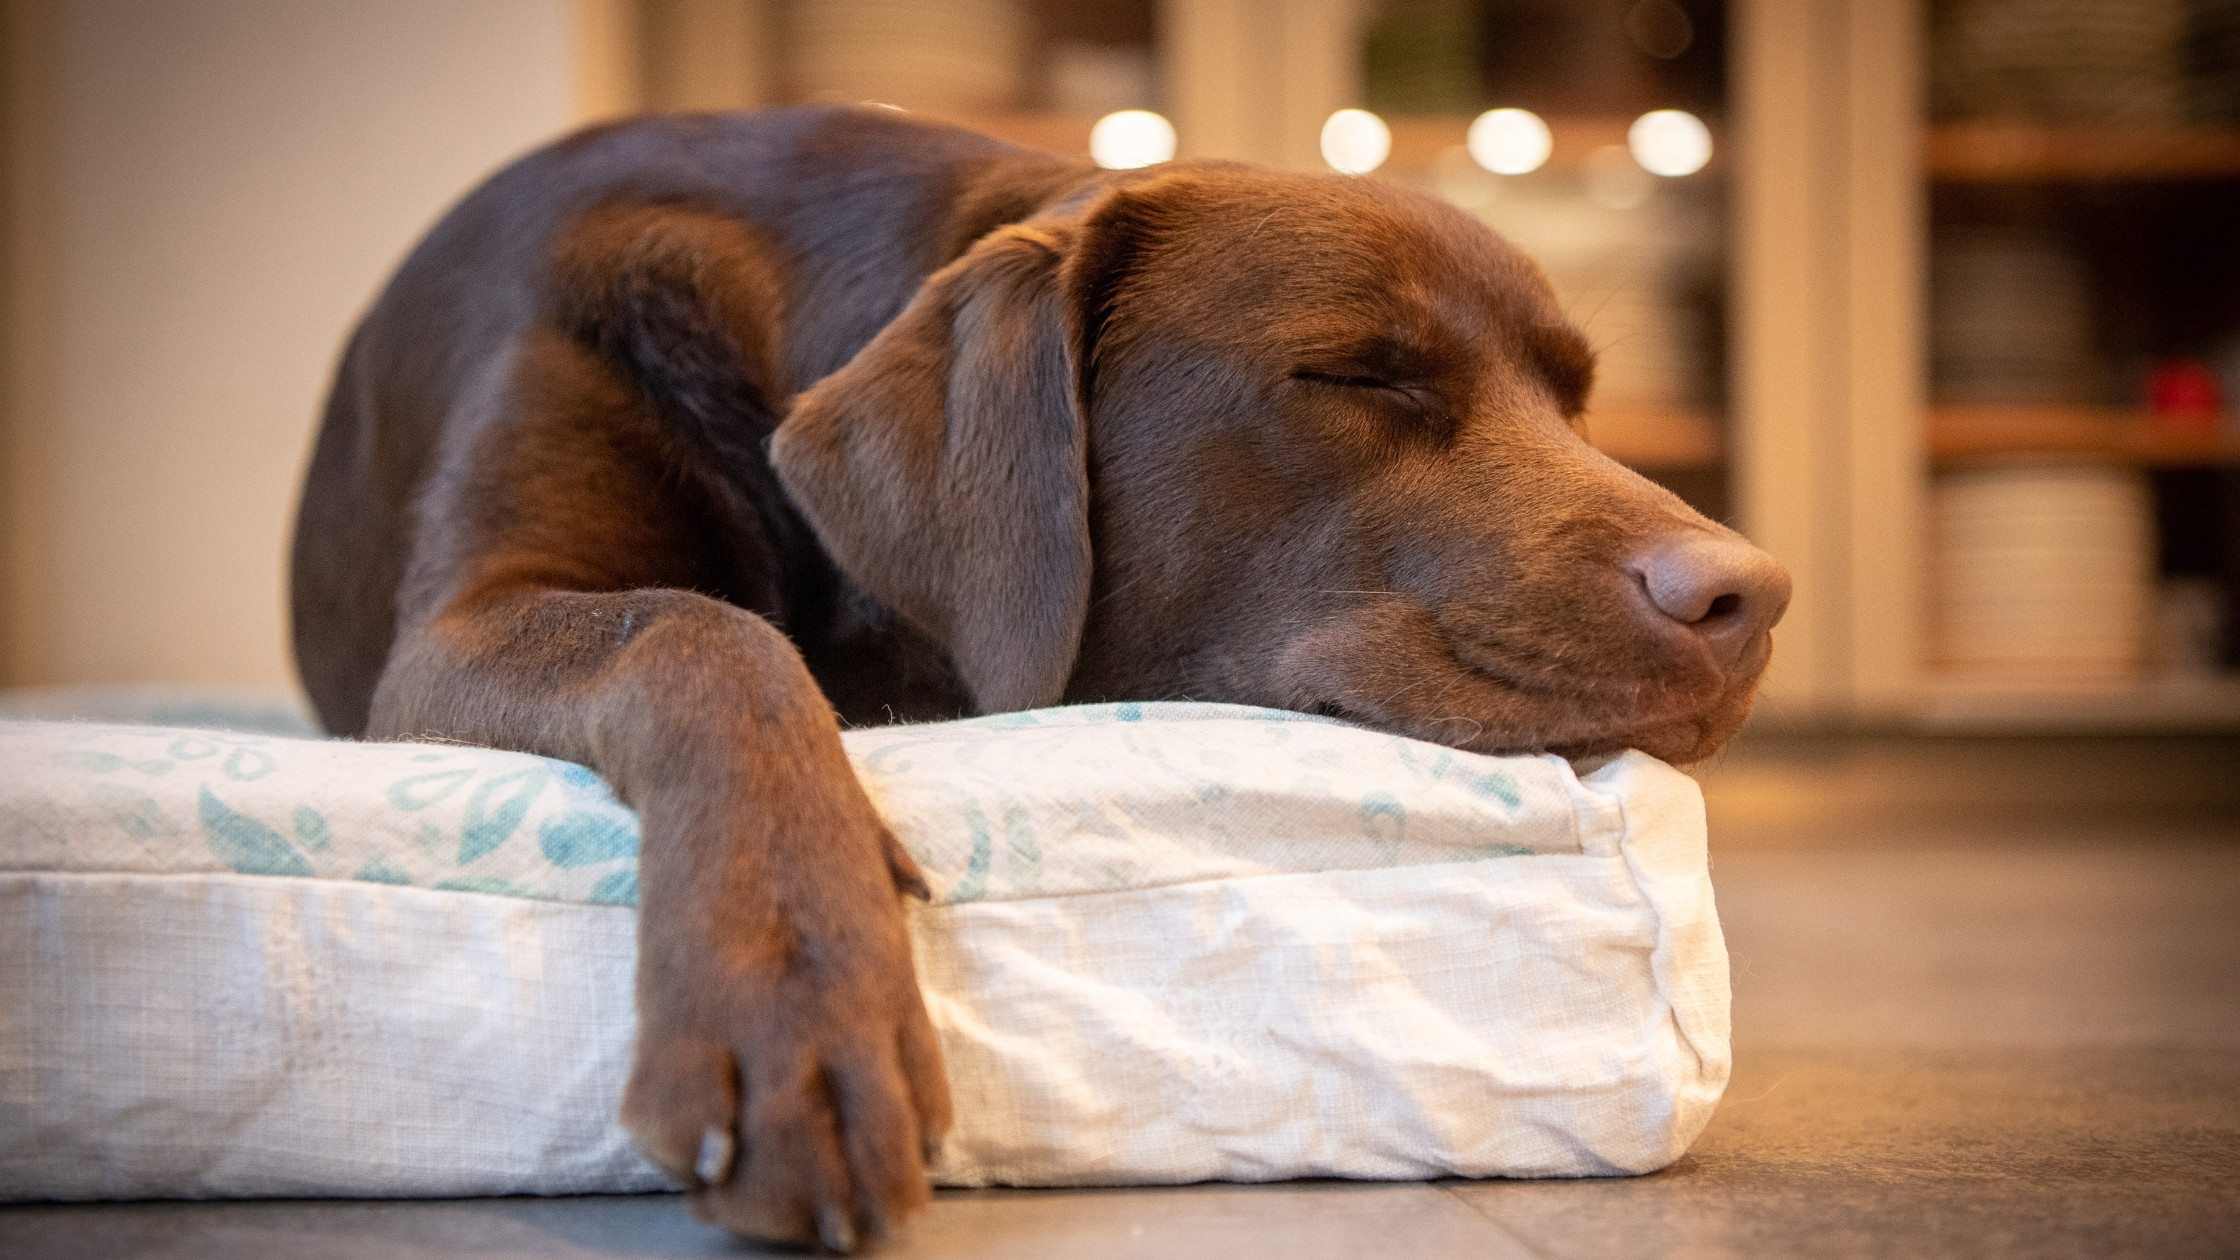 Co víme o psím spánku